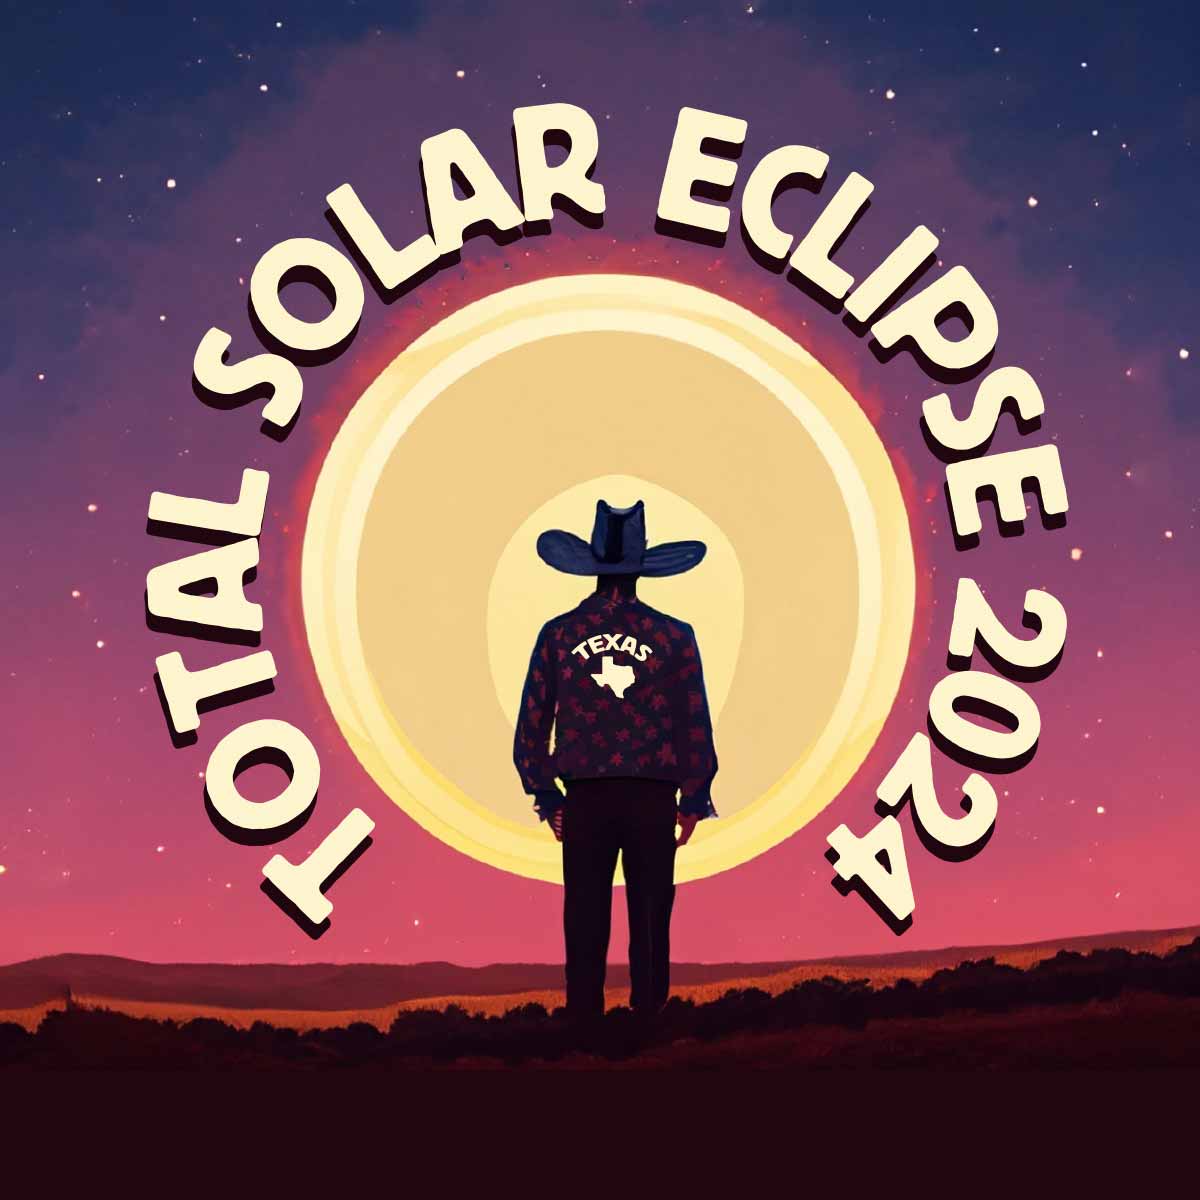 Texas Solar Eclipse over Texas 2024